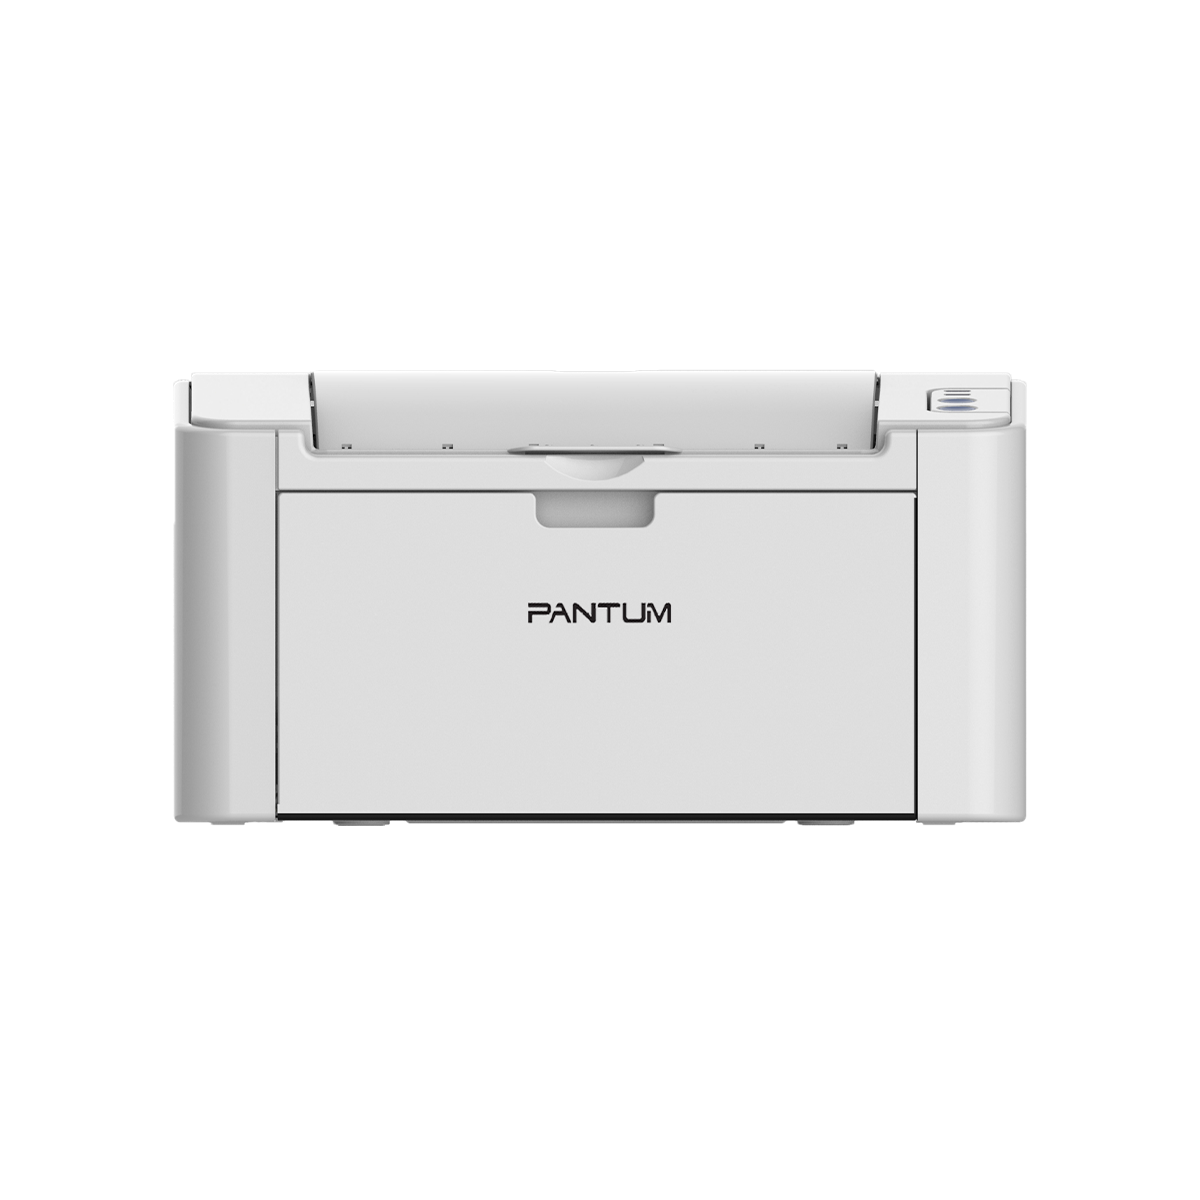 Принтер лазерный Pantum P2518, черно-белая печать, 22 стр/мин, 600x600 dpi, 32Мб RAM, USB